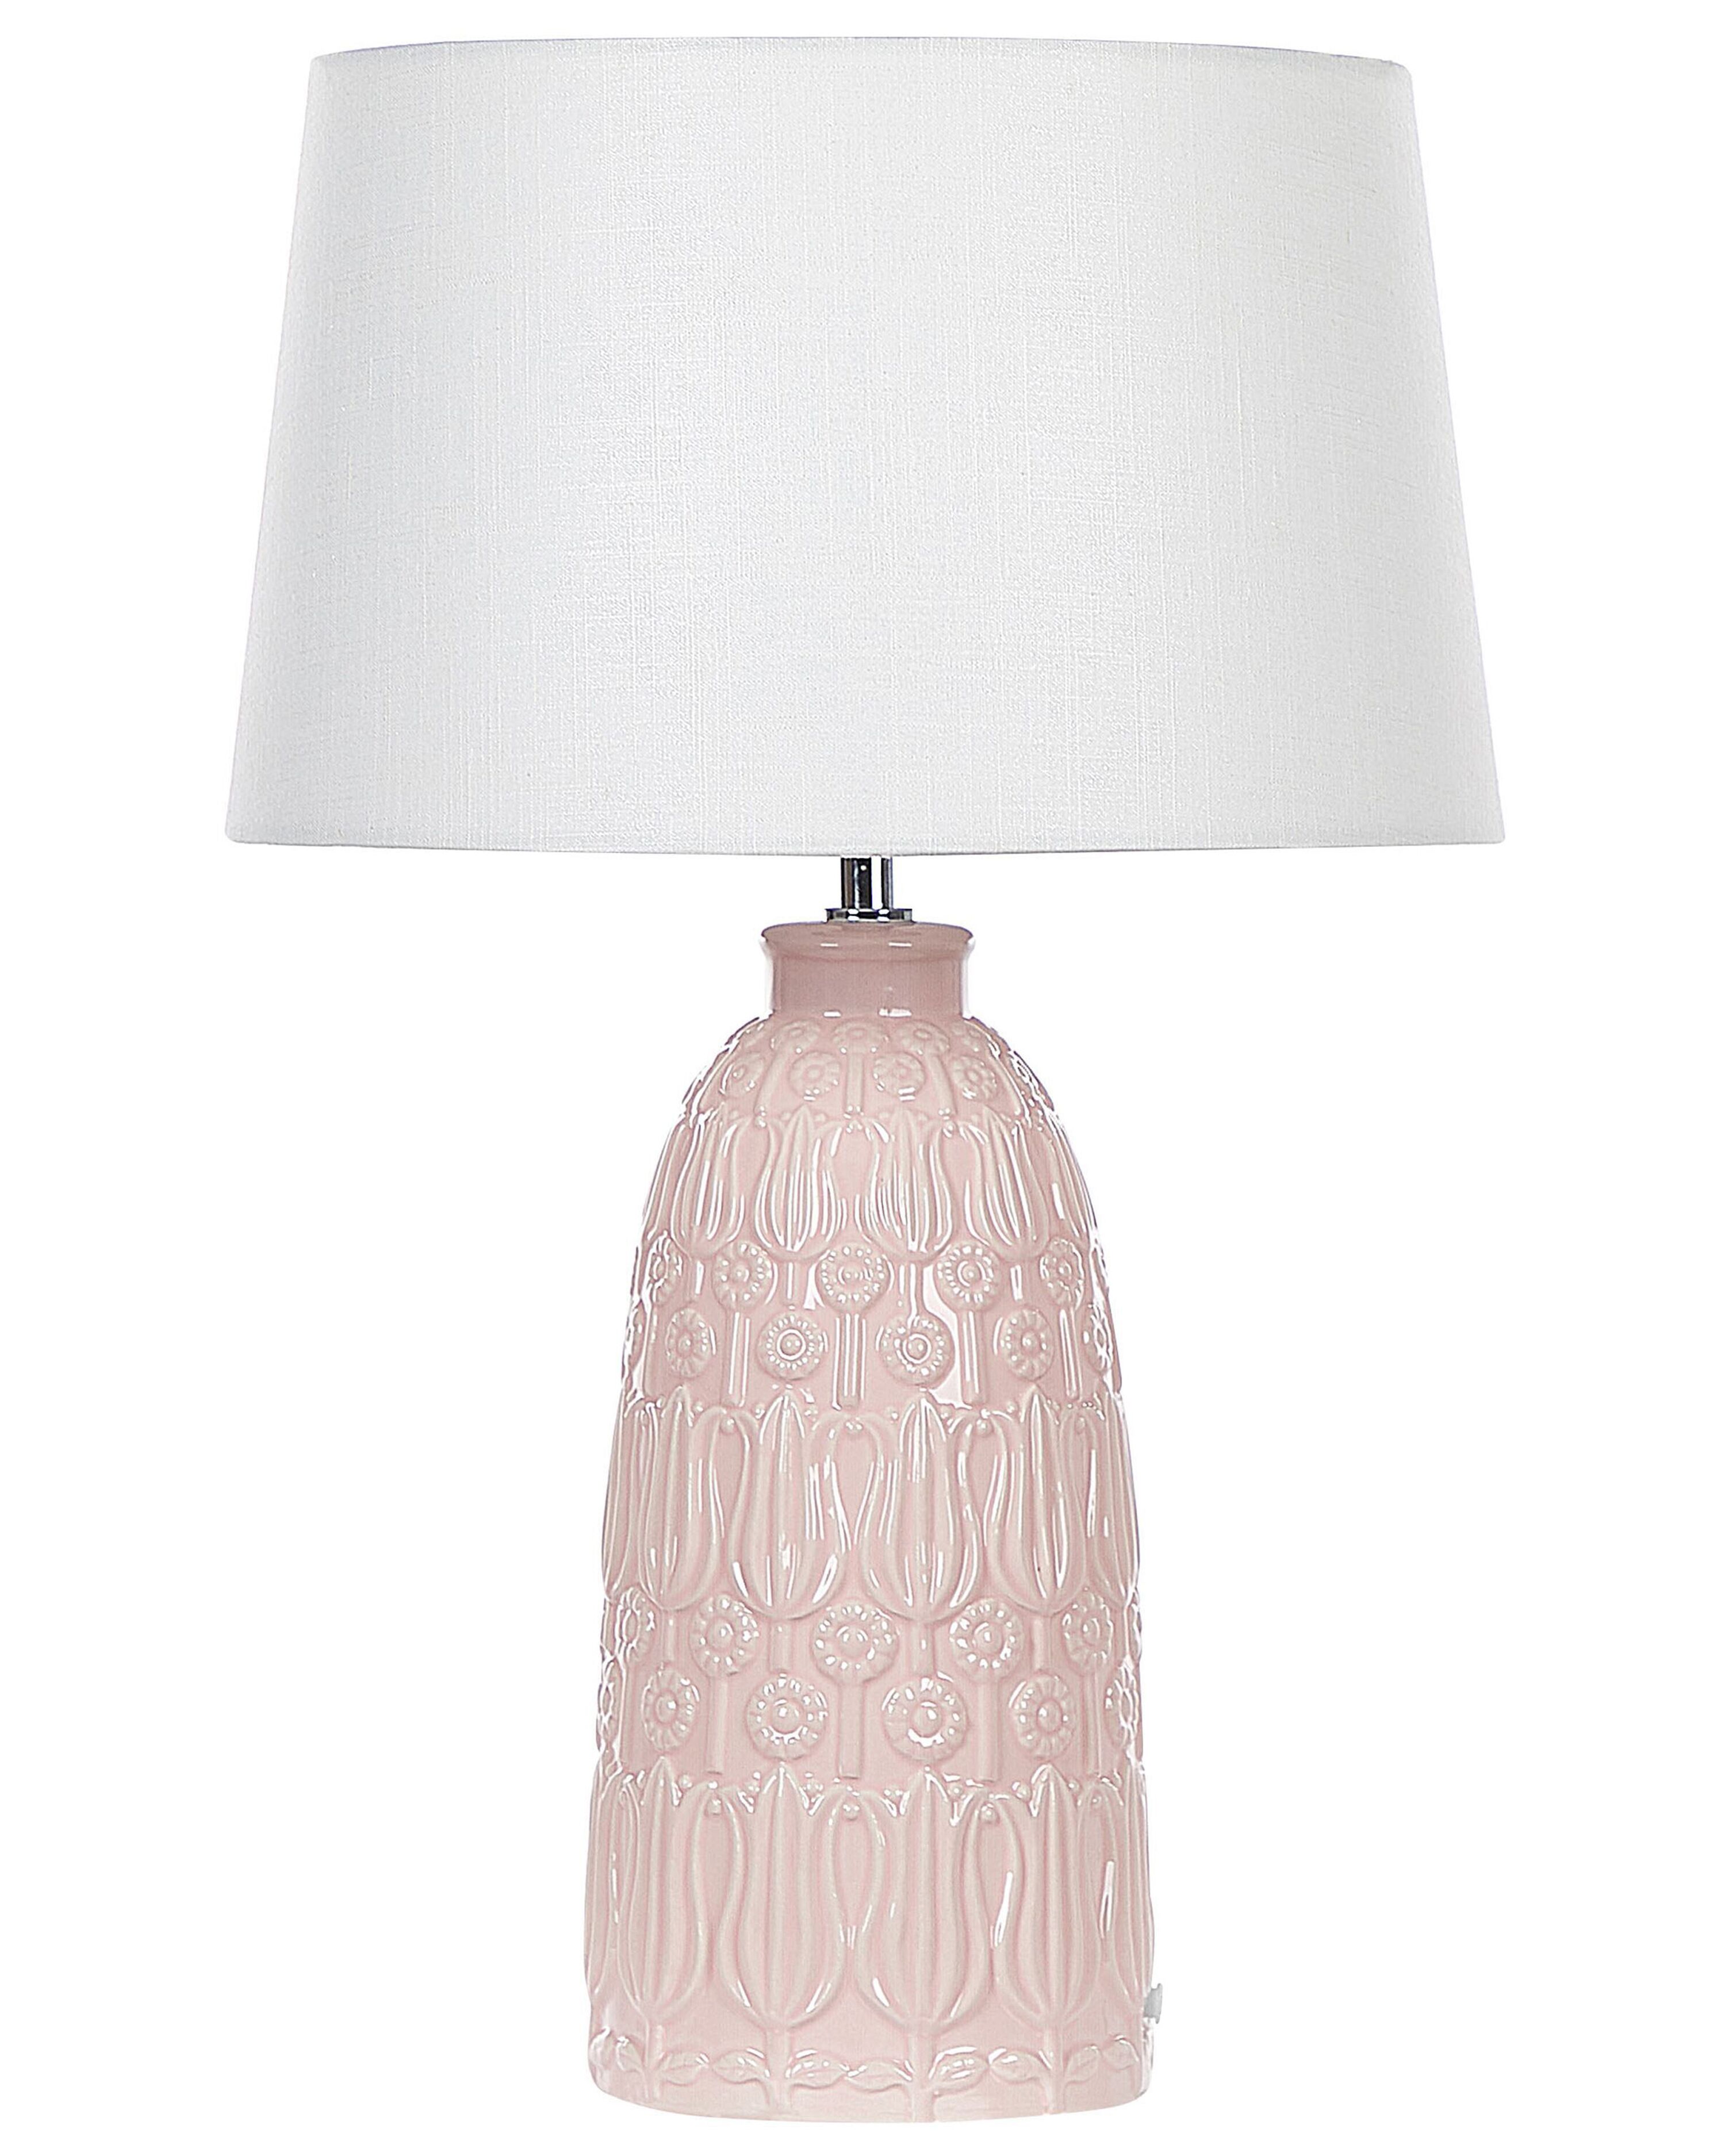 je bent inspanning verlichten Tafellamp keramiek roze ZARIMA | ✓ Gratis Levering